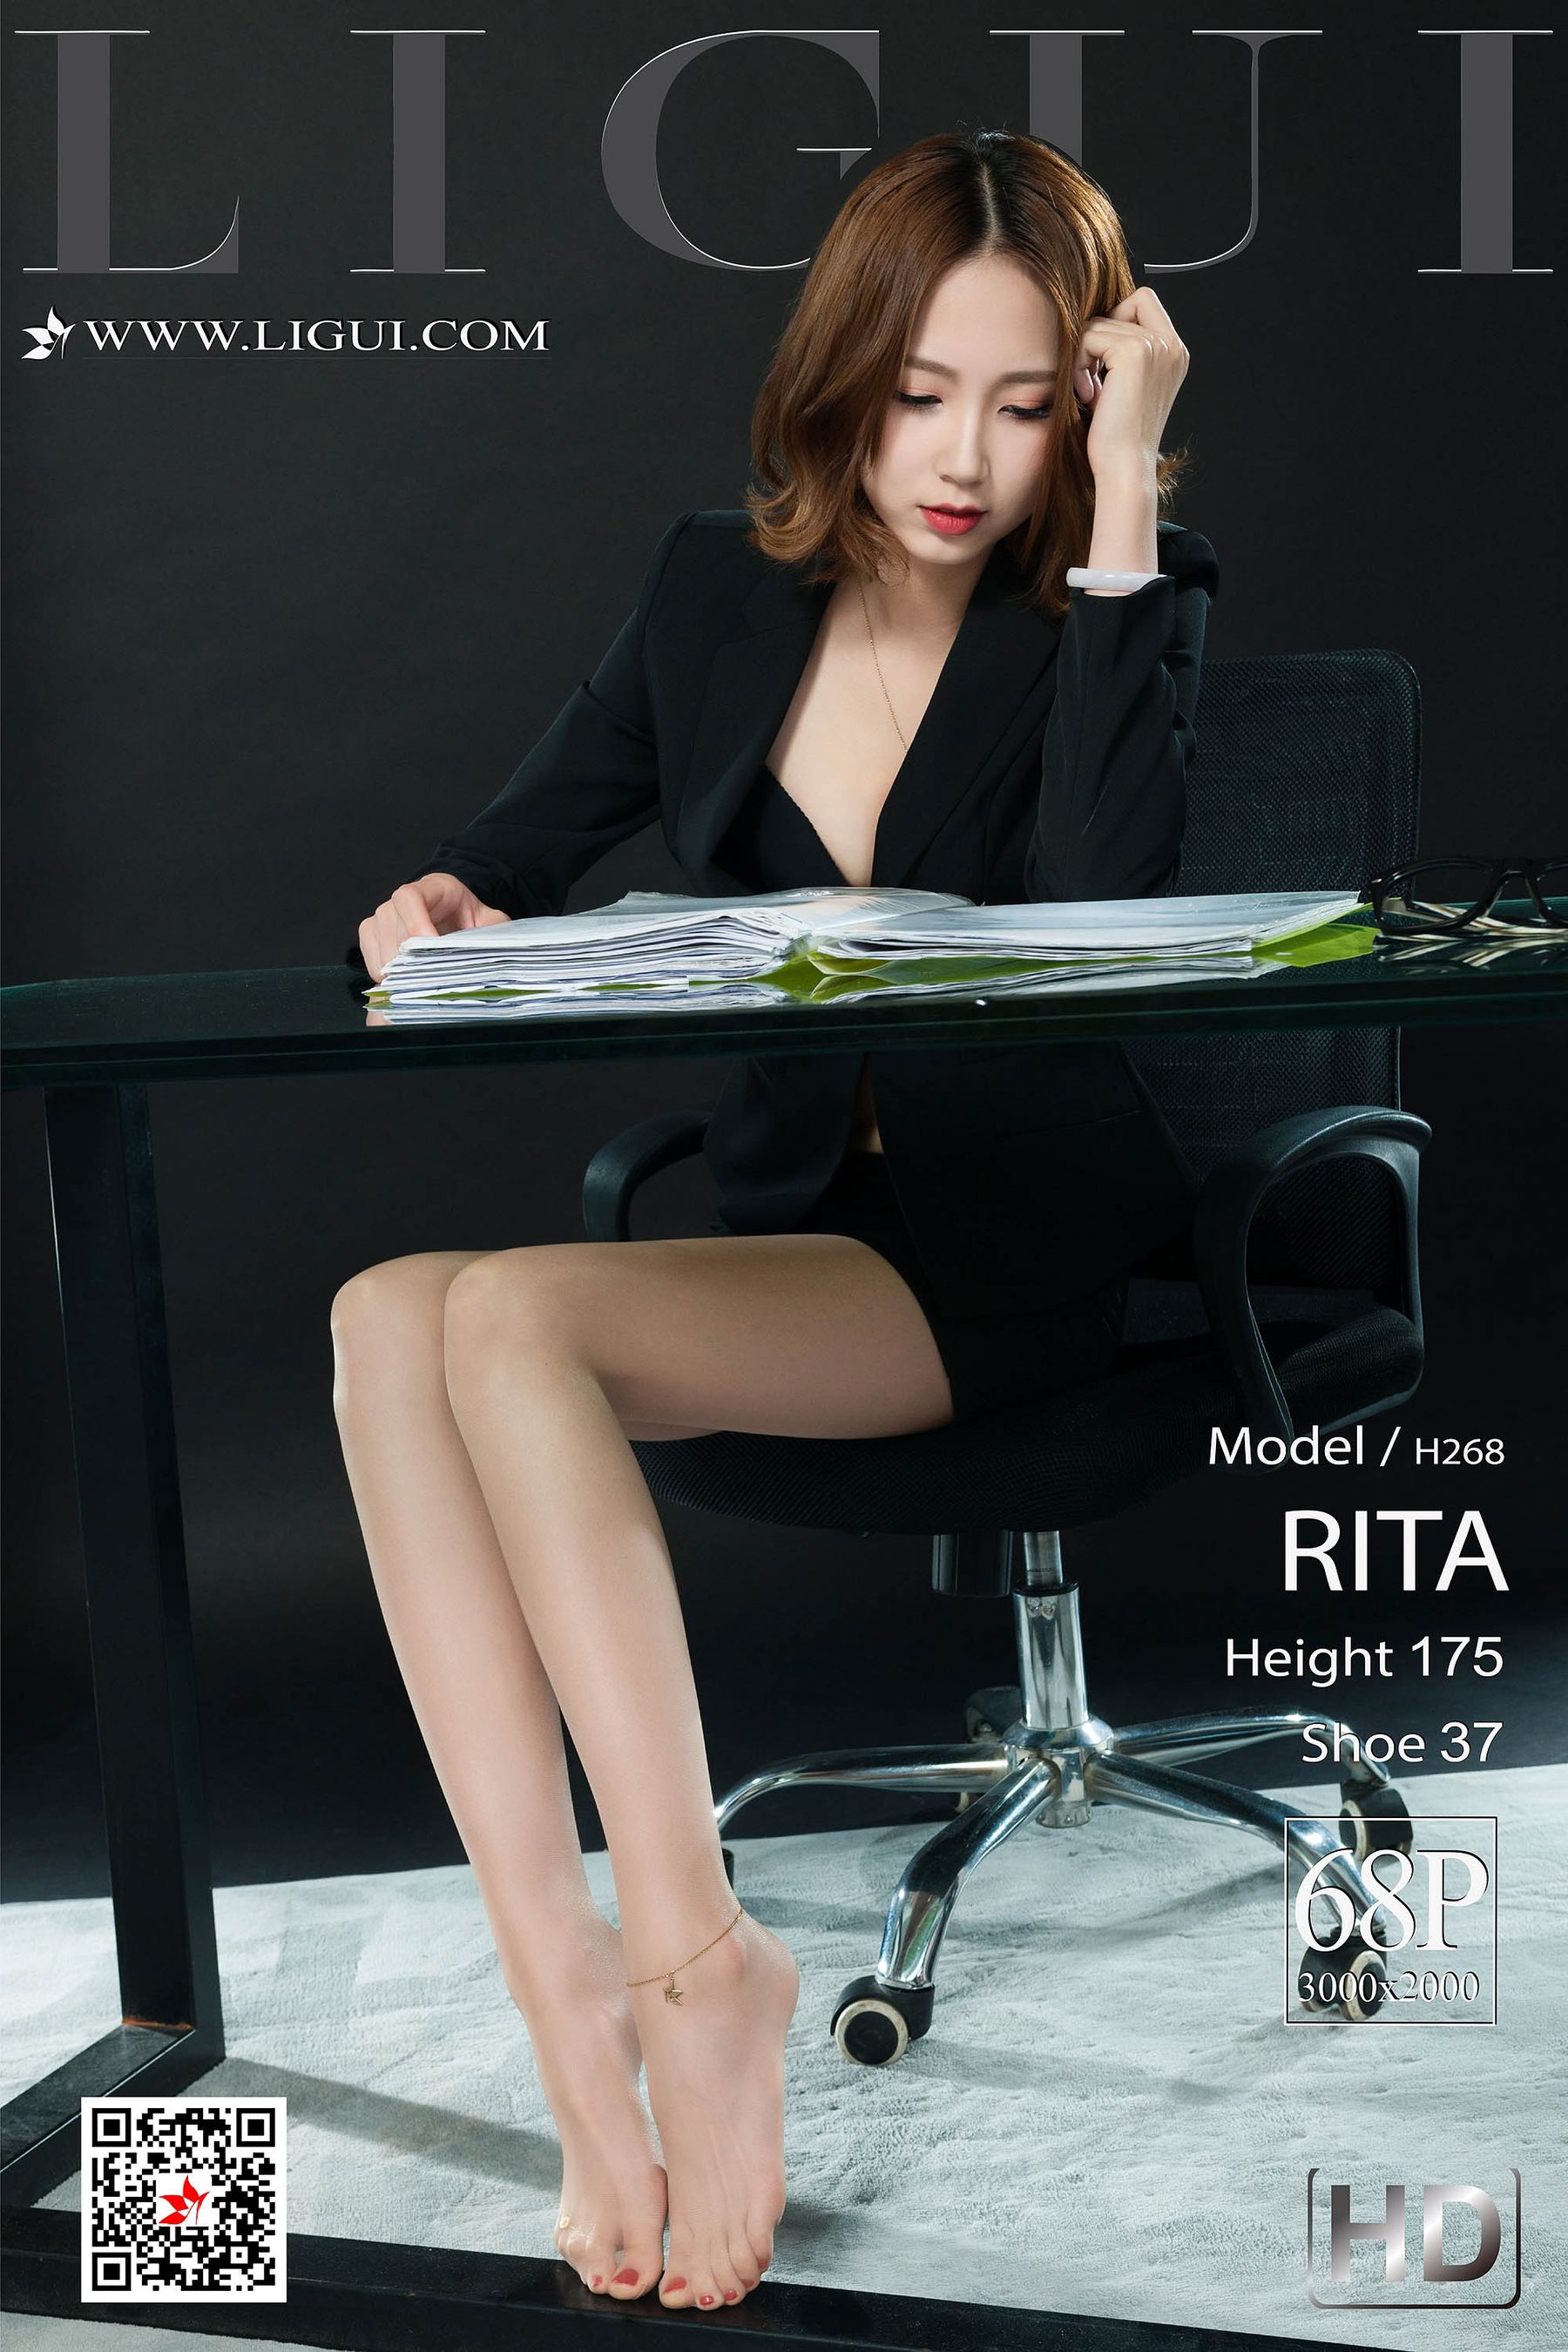 [丽柜LiGui] 网络丽人 Model RITA小东西几天没做水这么多图片